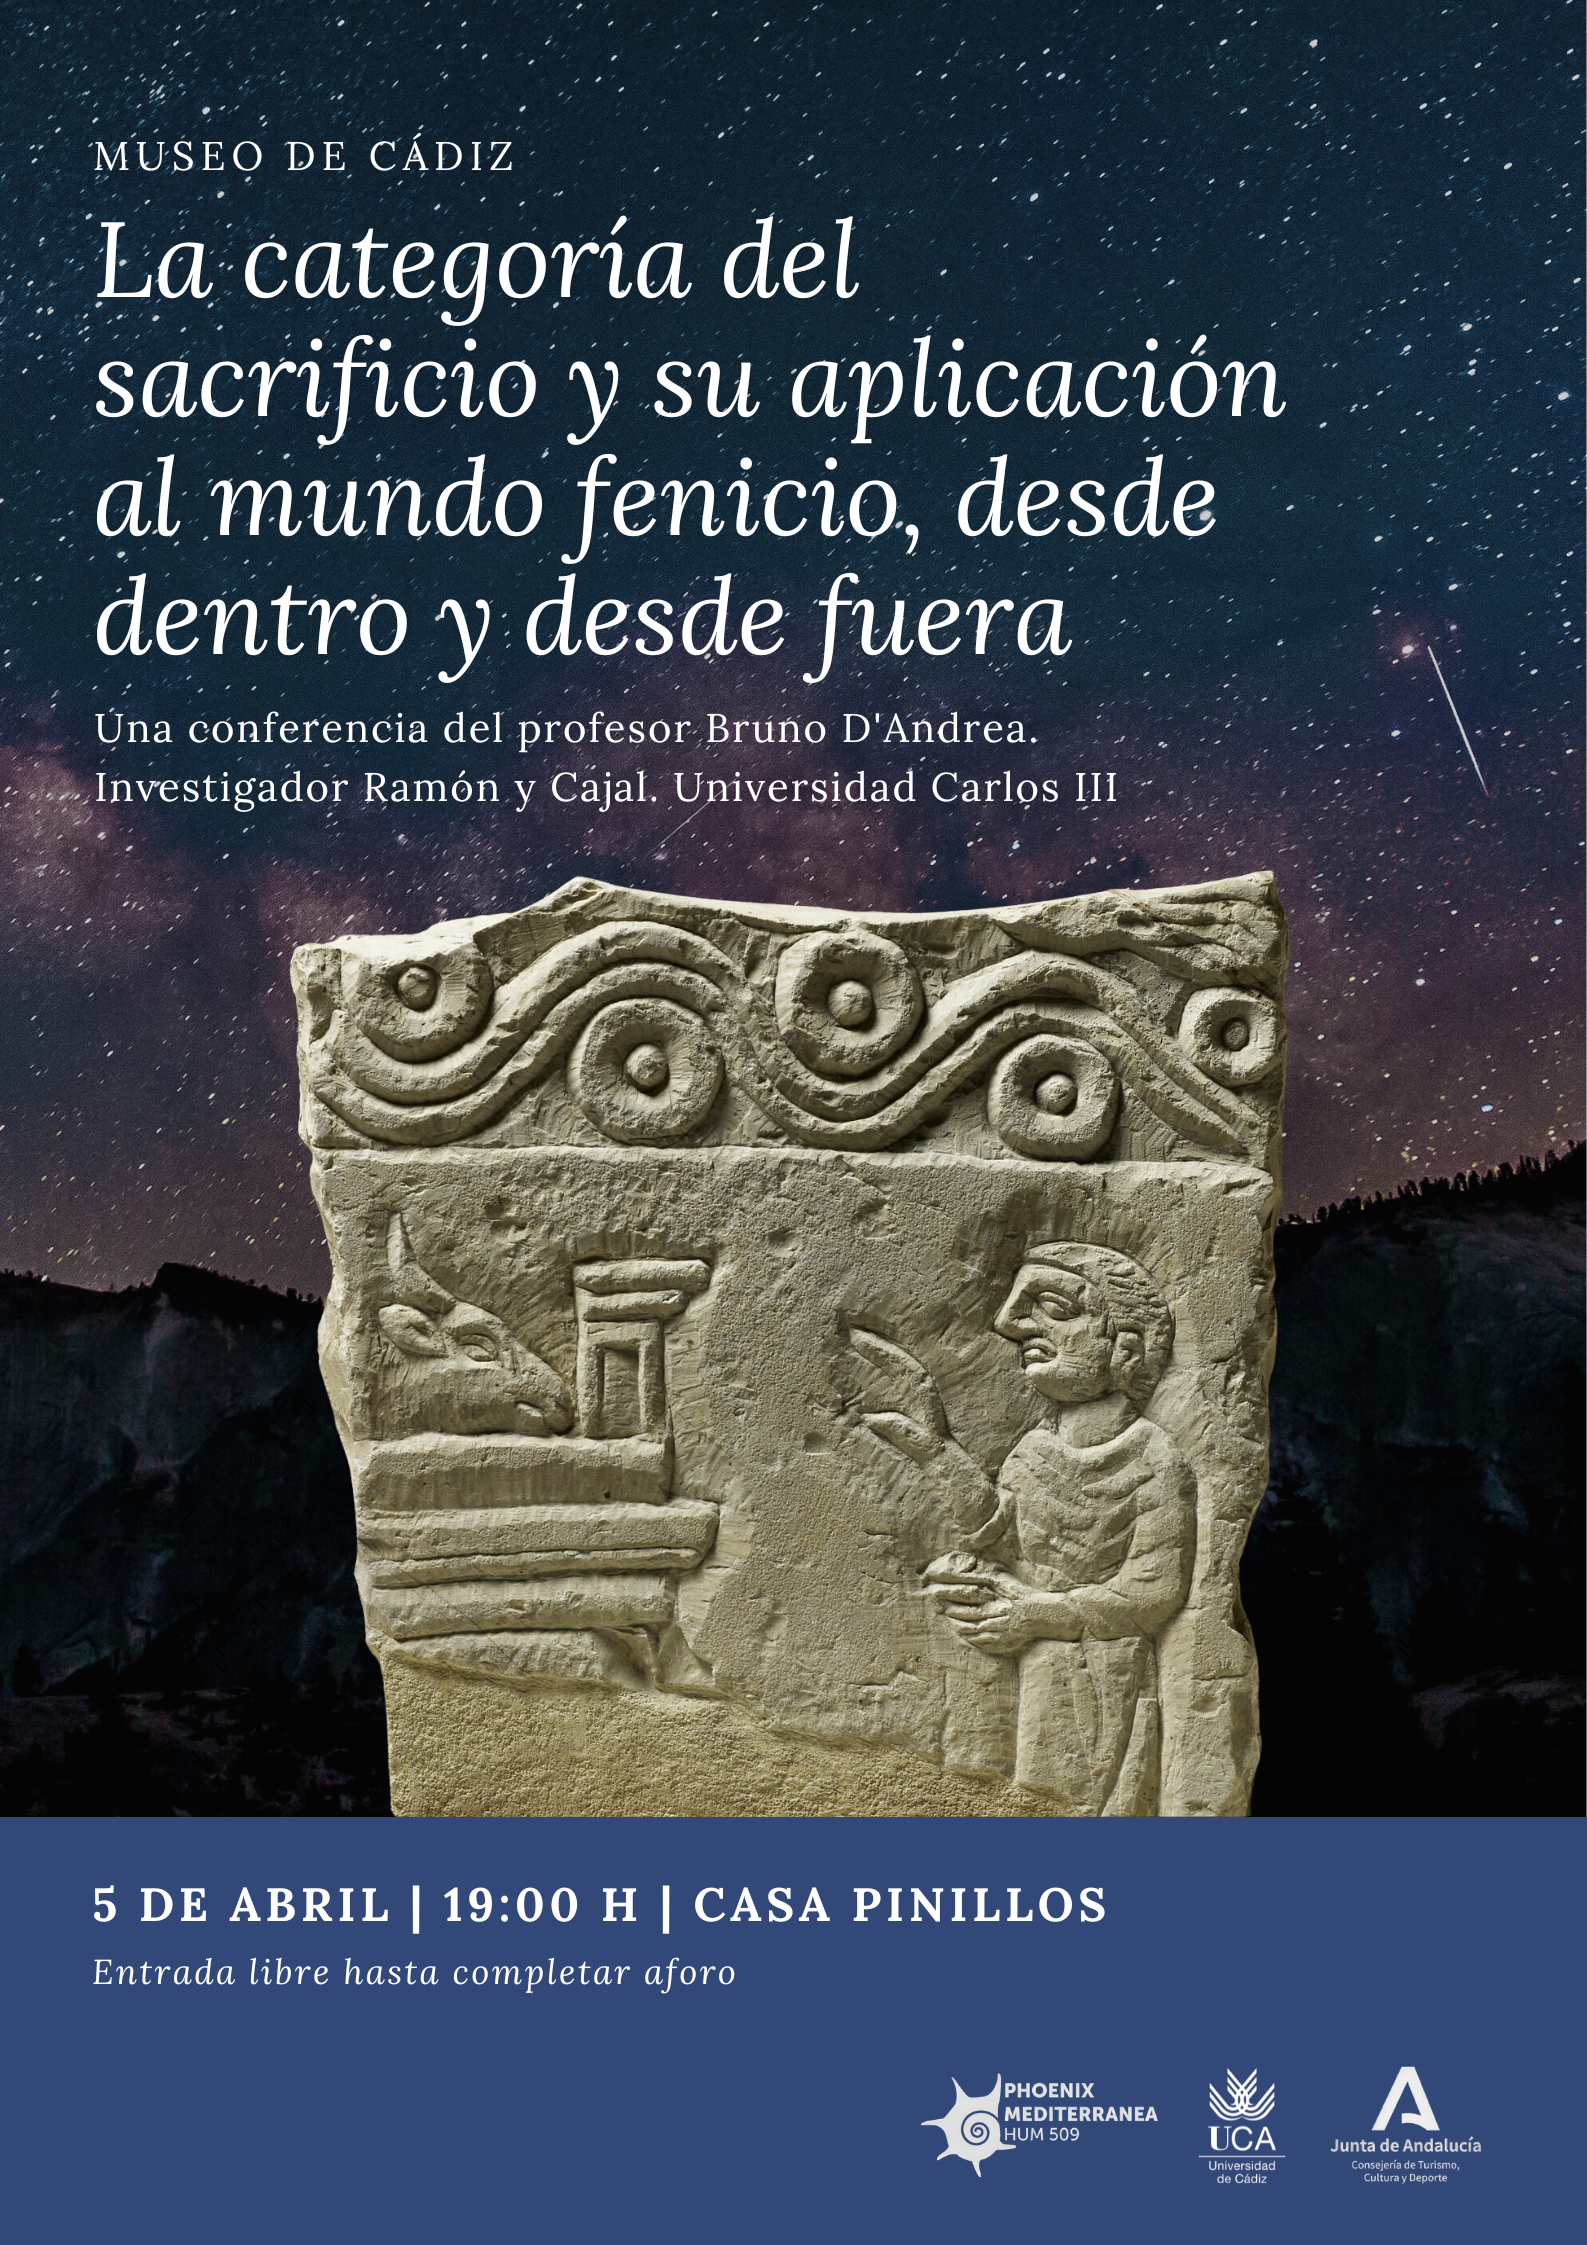 Conferencia “La categoría del sacrificio y su aplicación al mundo fenicio, desde dentro y d...